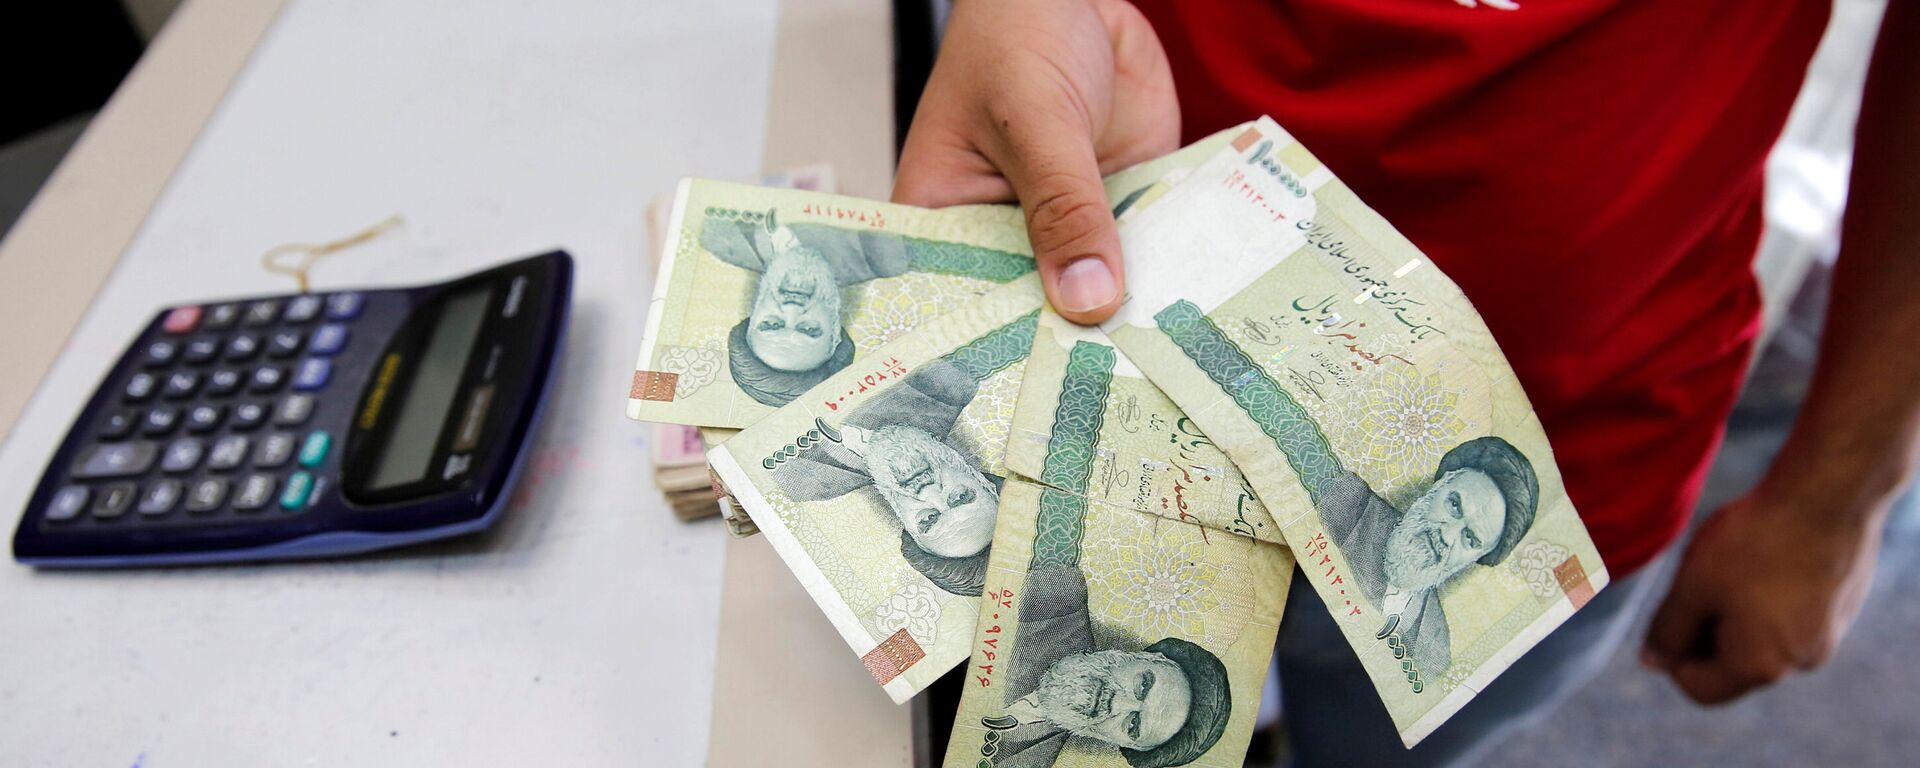 بائع يتفقد الريال الإيراني في محل لبيع العملات في بغداد ، العراق 8 أغسطس/ آب 2018 - سبوتنيك عربي, 1920, 04.12.2021